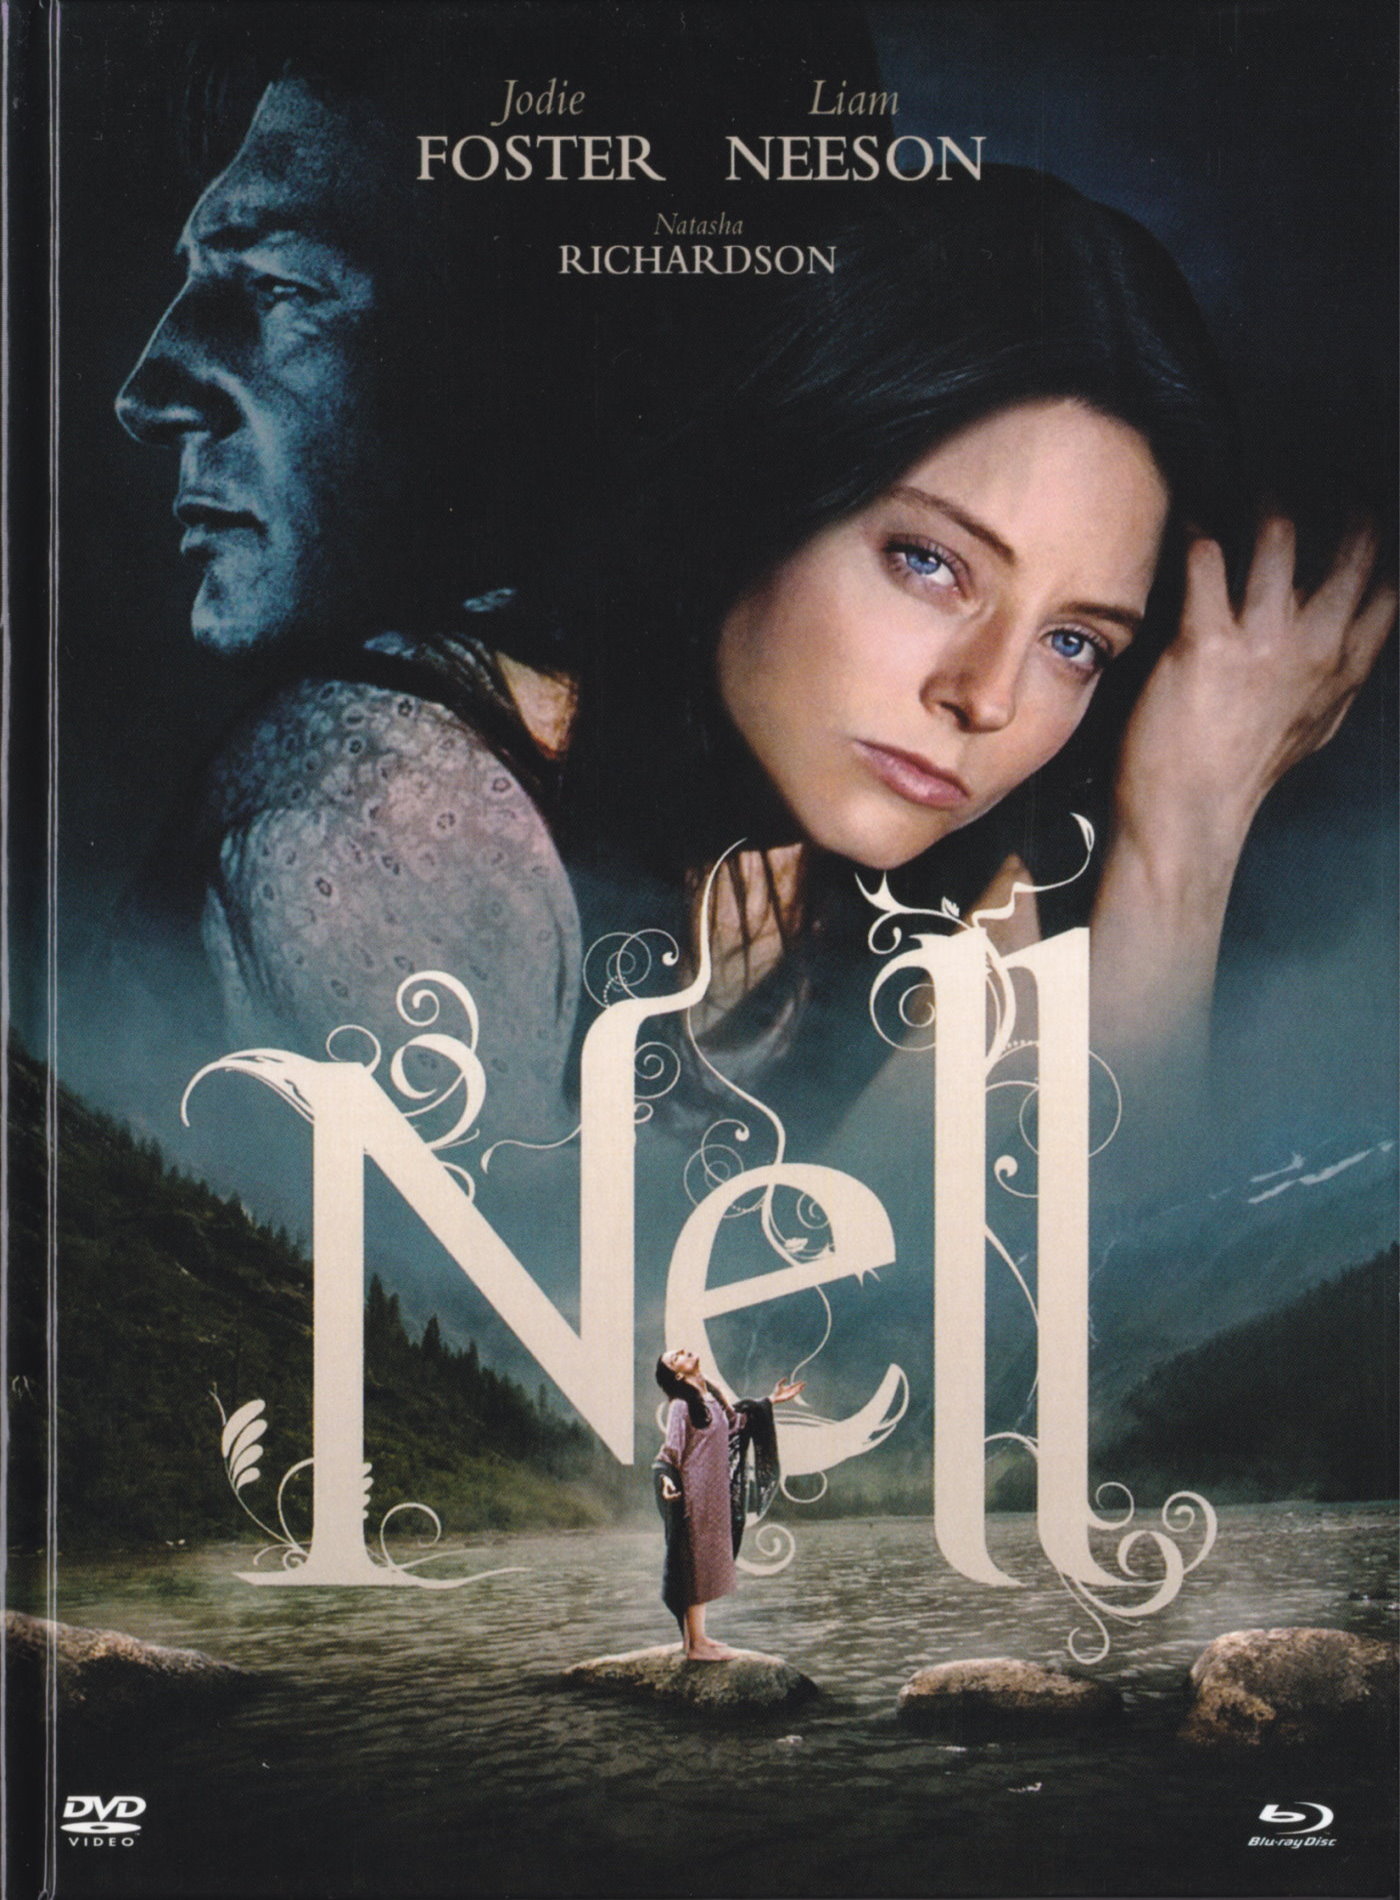 Cover - Nell.jpg